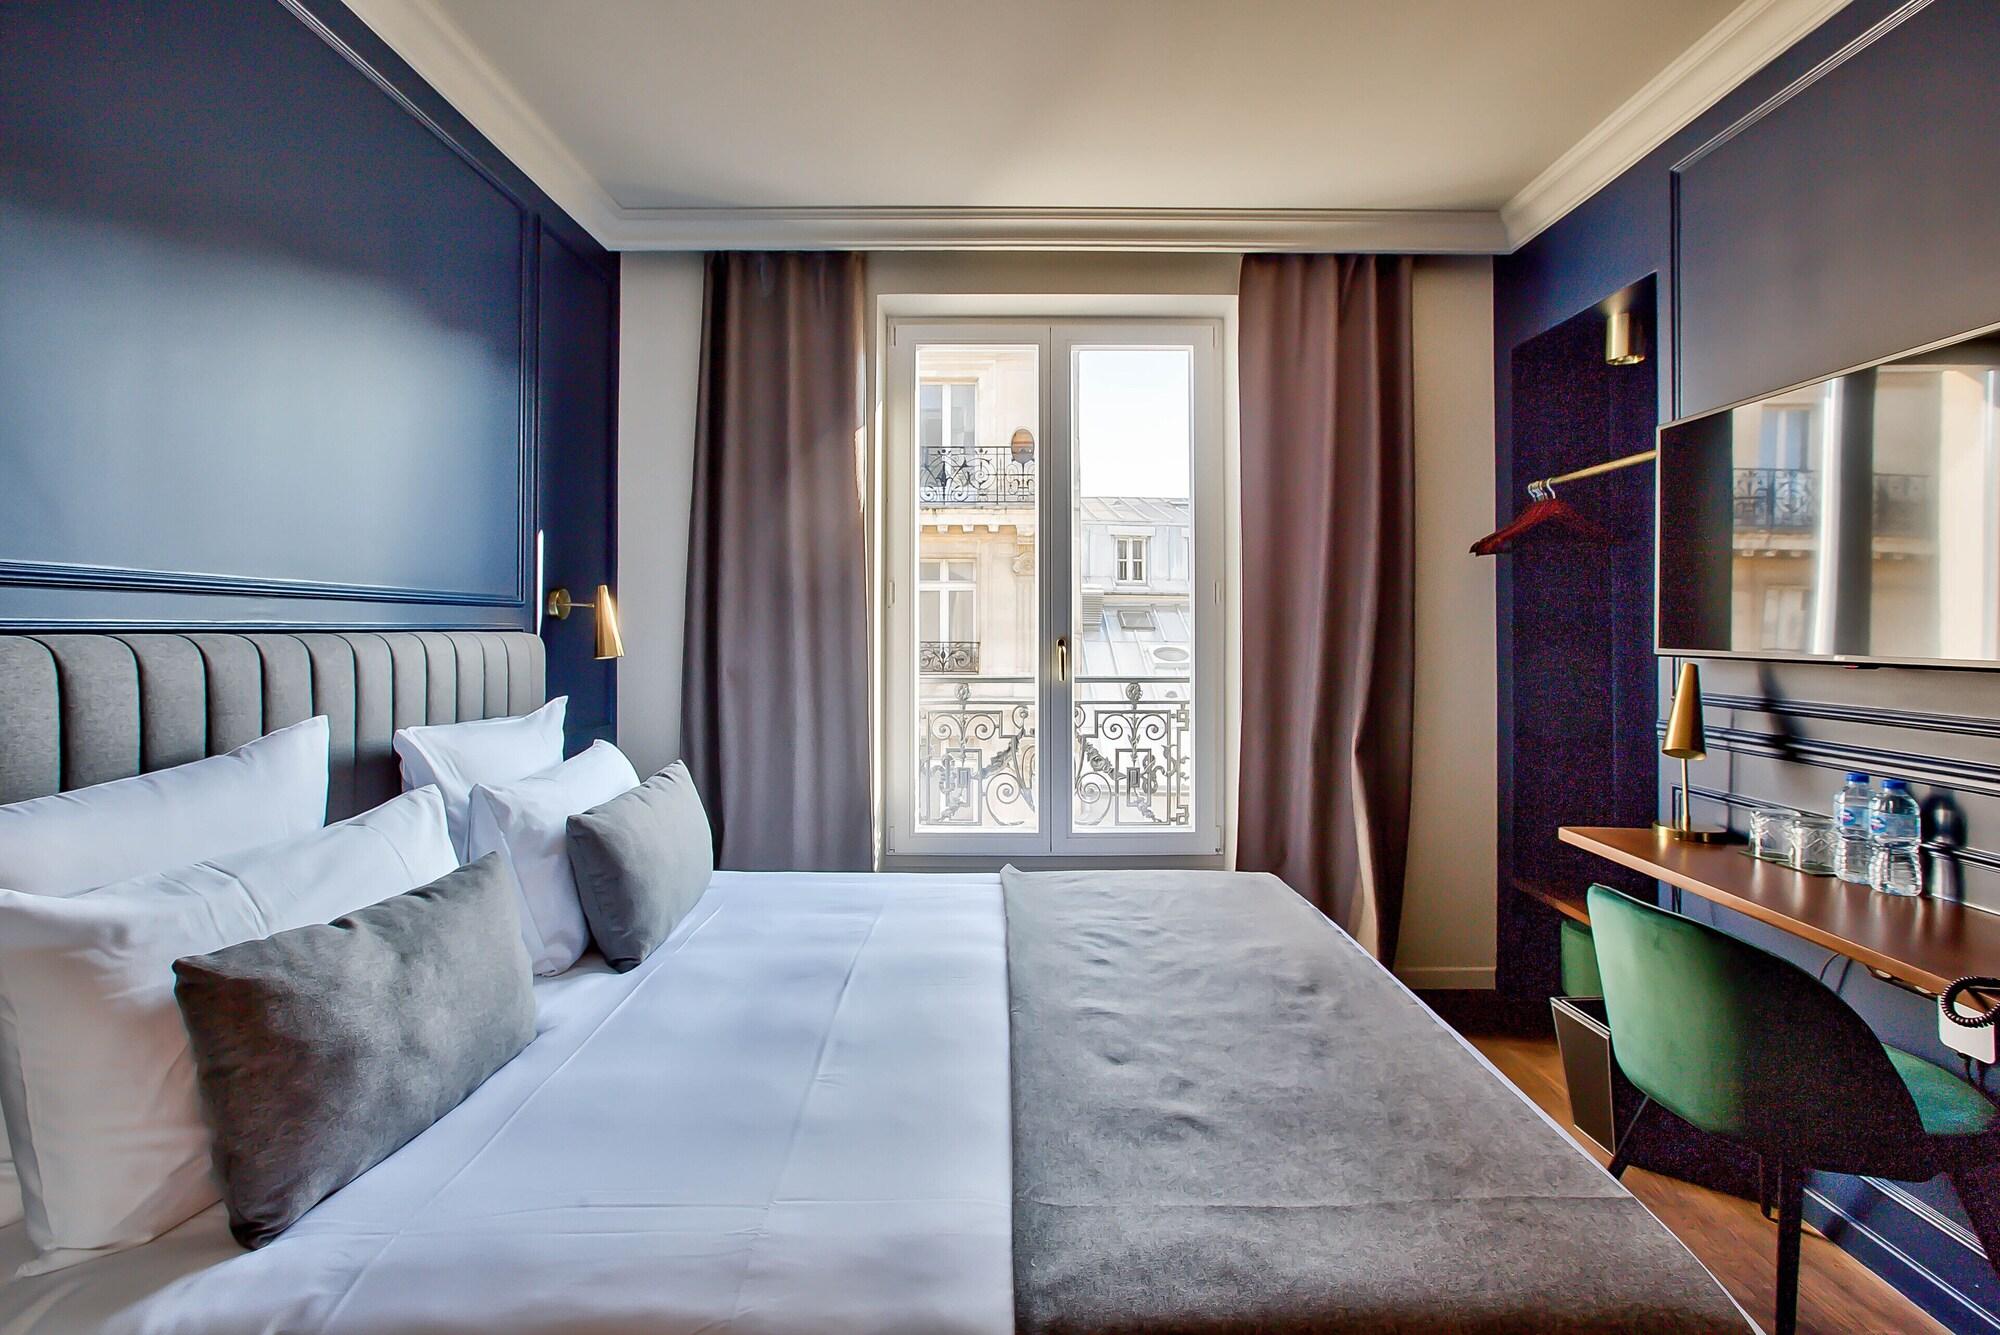 Отель Bervic Montmartre Париж Экстерьер фото